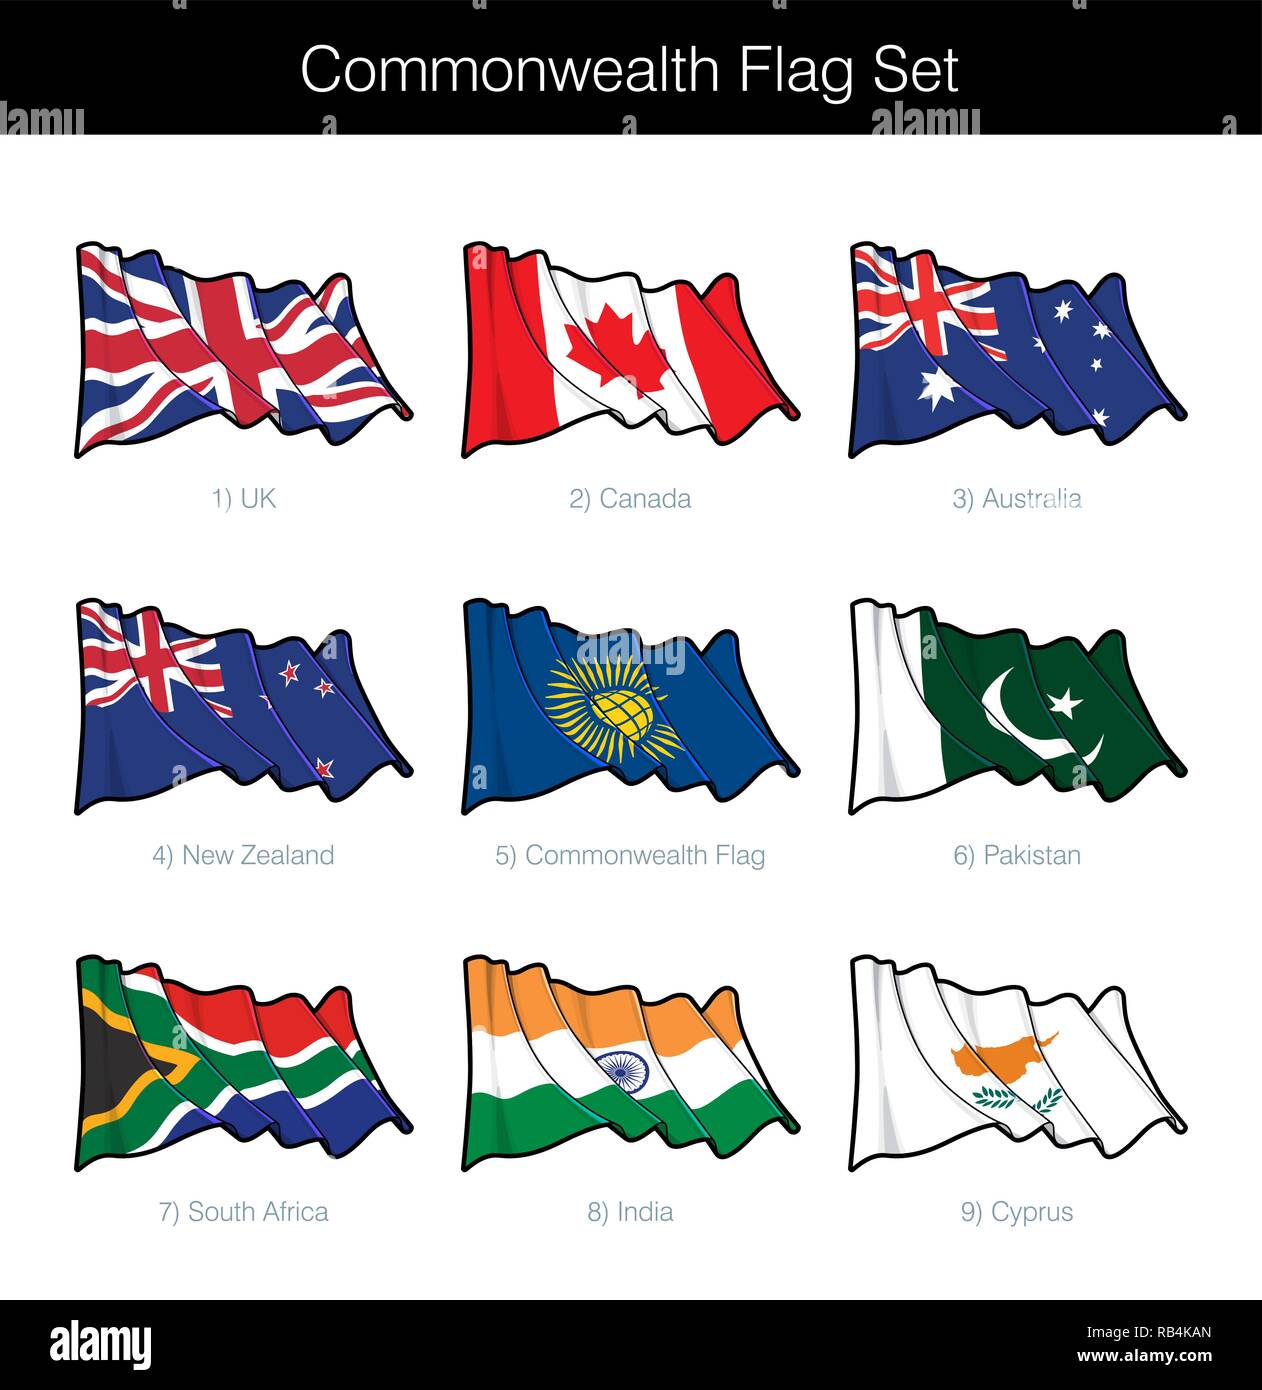 Commonwealth wehende Flagge gesetzt. Das Set beinhaltet die Flaggen von Großbritannien, Kanada, Australien, Neuseeland, Pakistan, Indien, Südafrika, Zypern und die Commonwe Stock Vektor